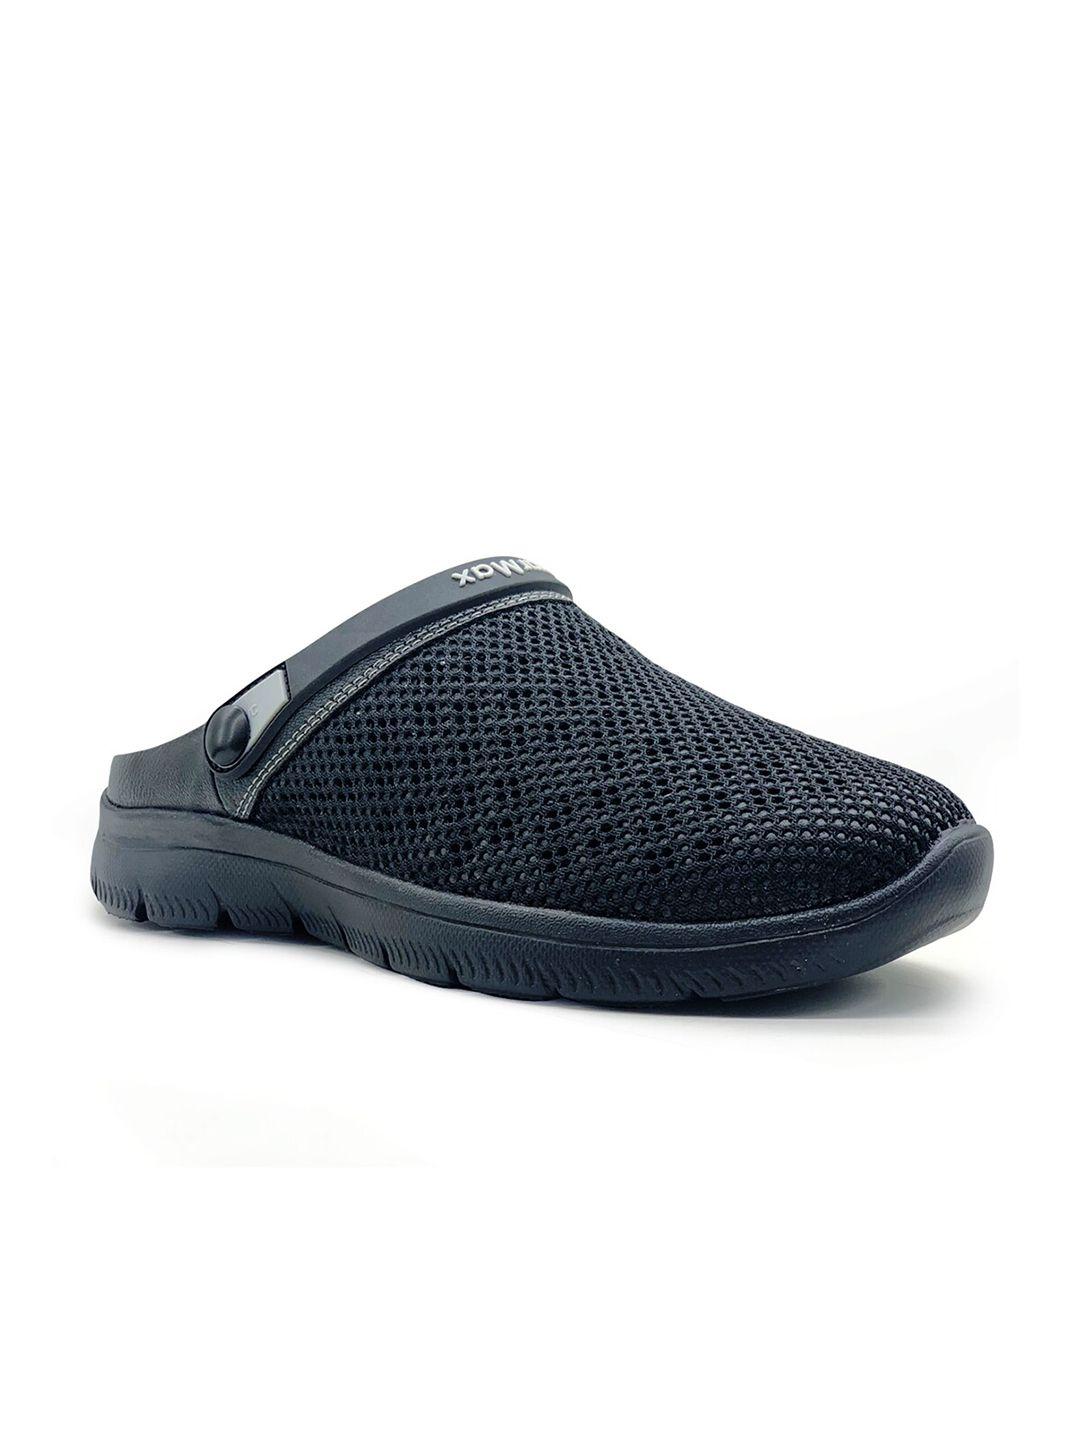 kazarmax-men-black-clogs-sandals